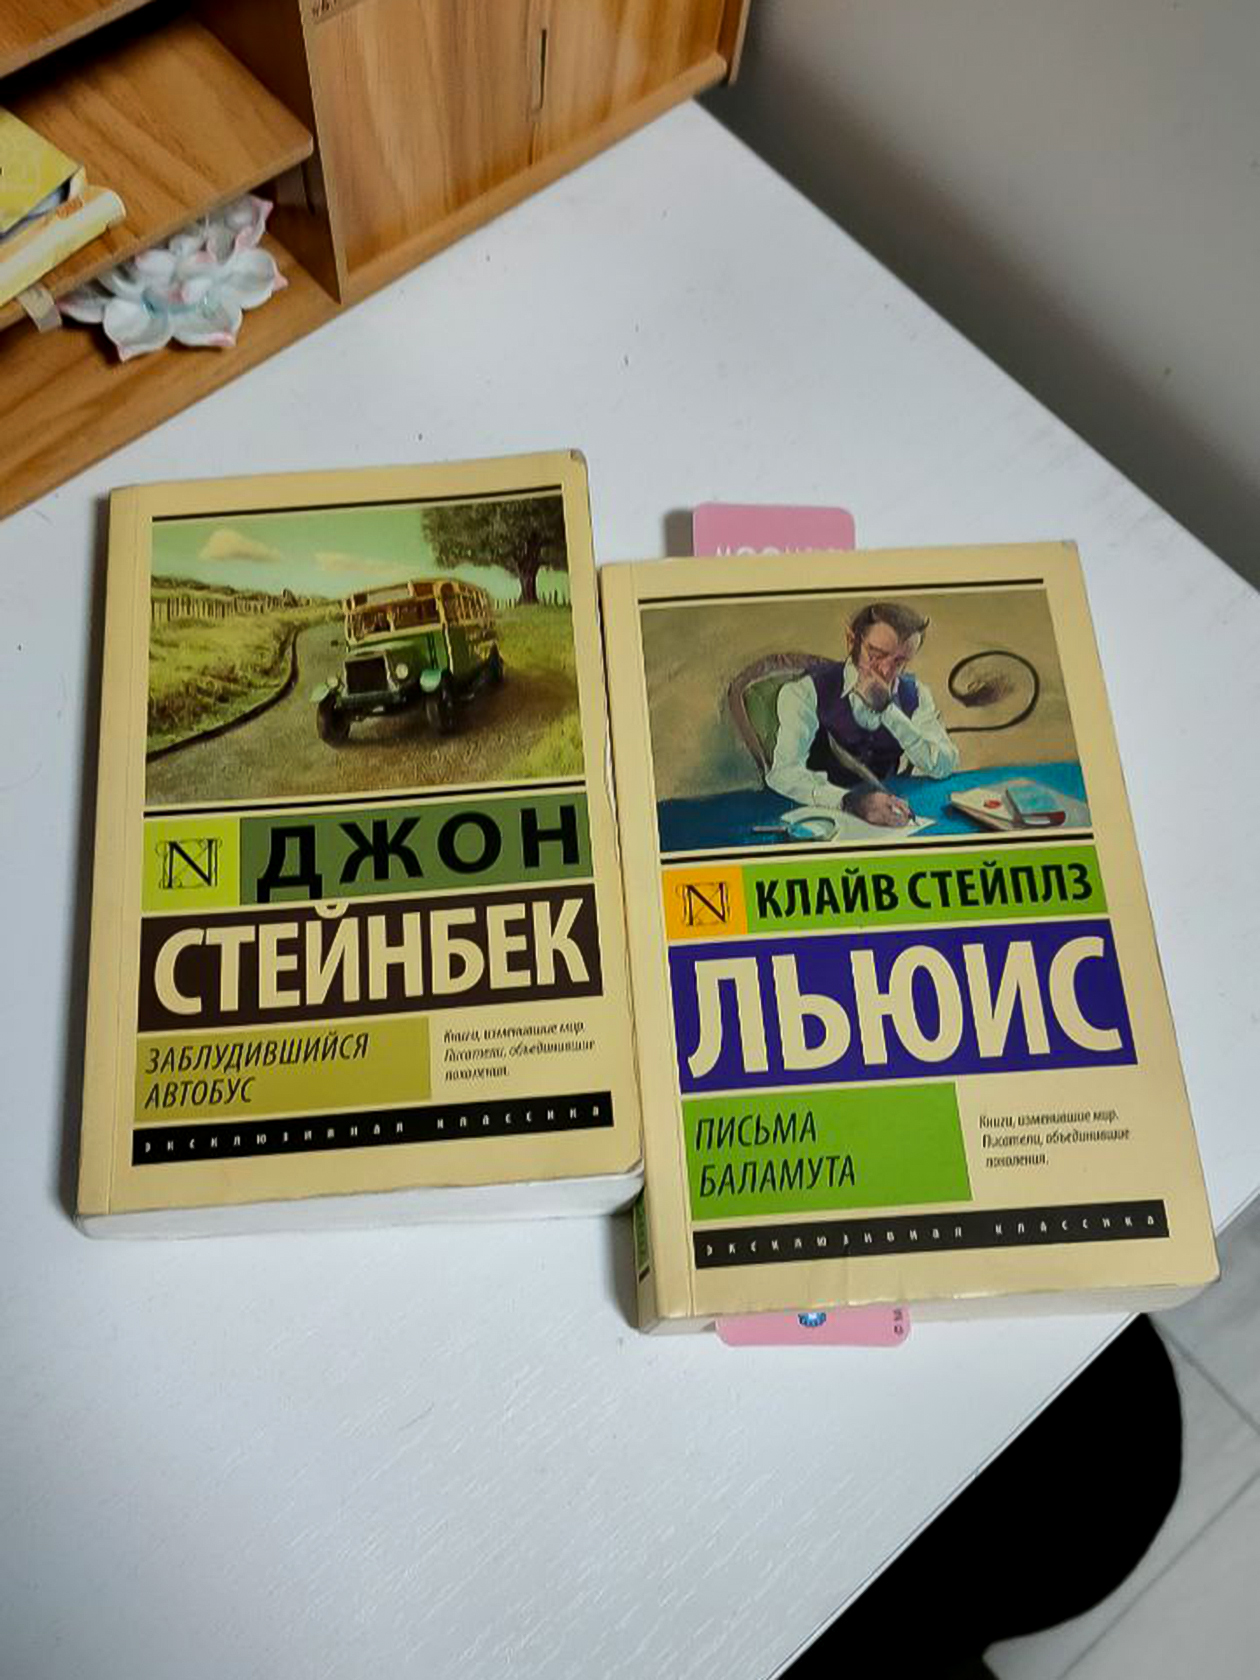 Книги Стейнбека и Льюиса я забрала у девушки, которая выложила объявление в петербургском чате обмена вещами